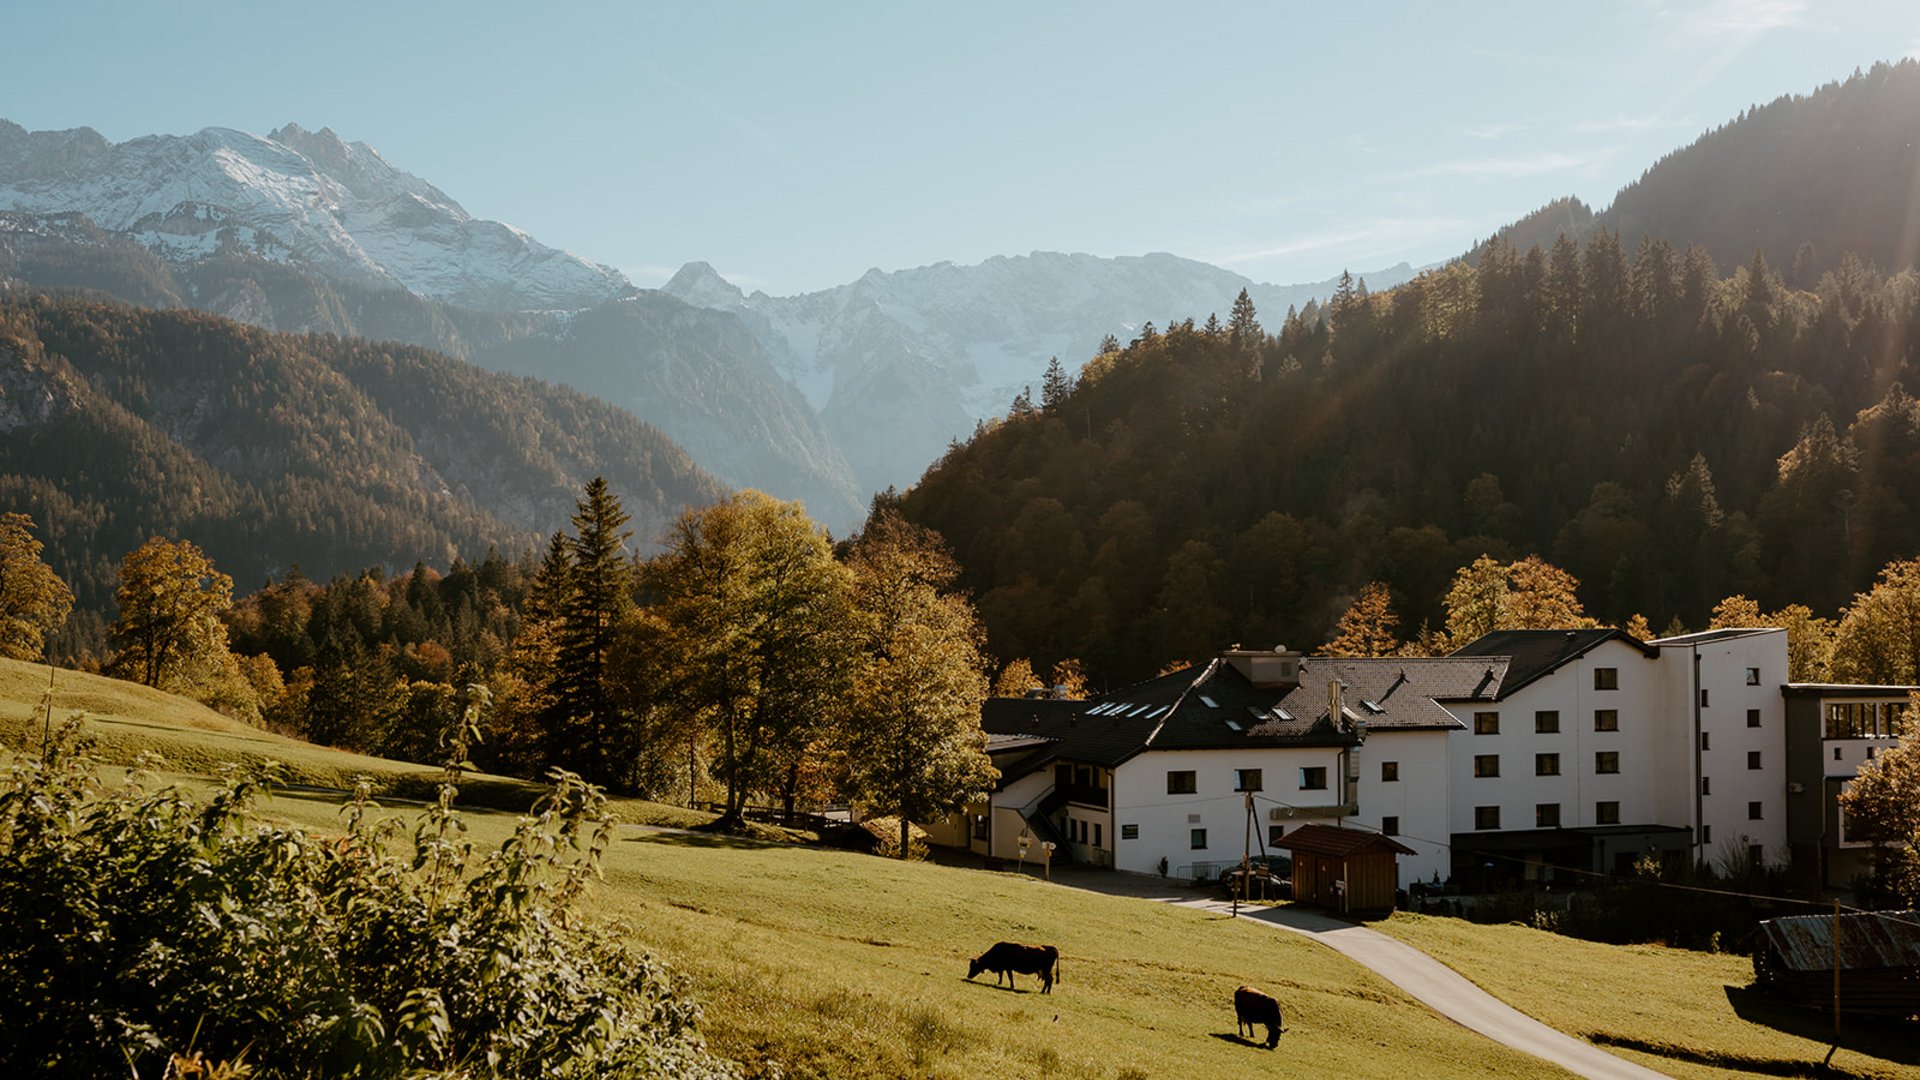 Your hotel in Garmisch-Partenkirchen